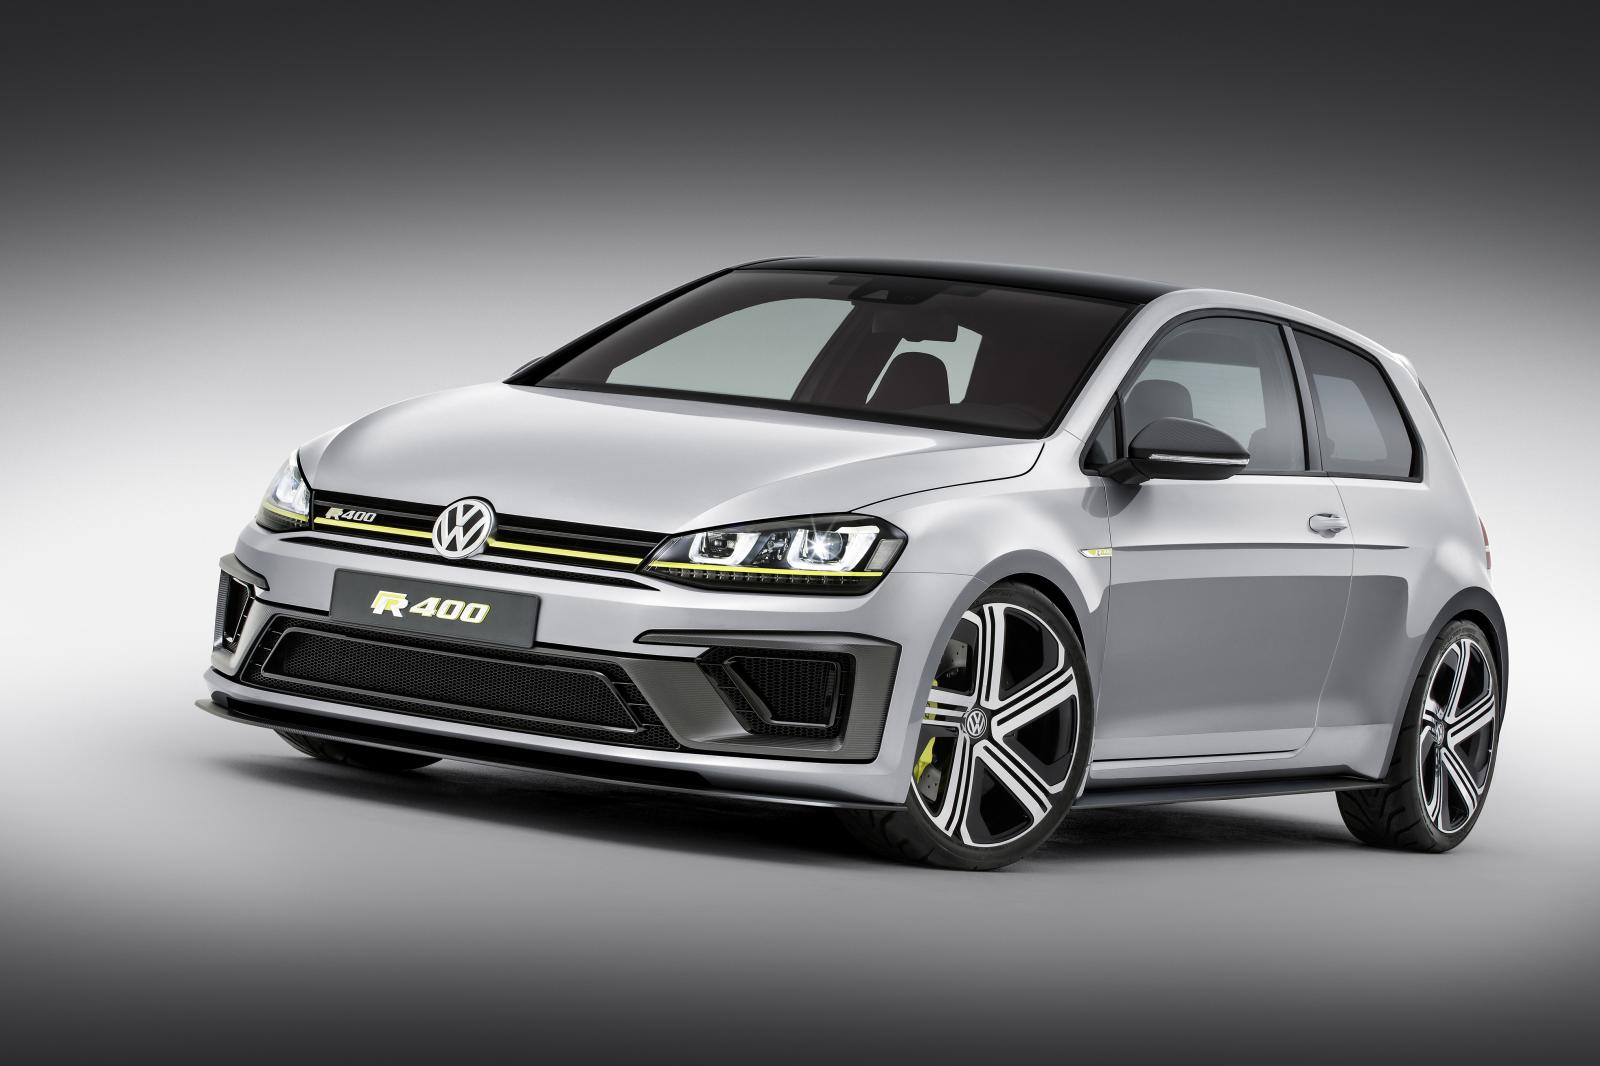 Volkswagen confirma una versión de producción del Golf R400